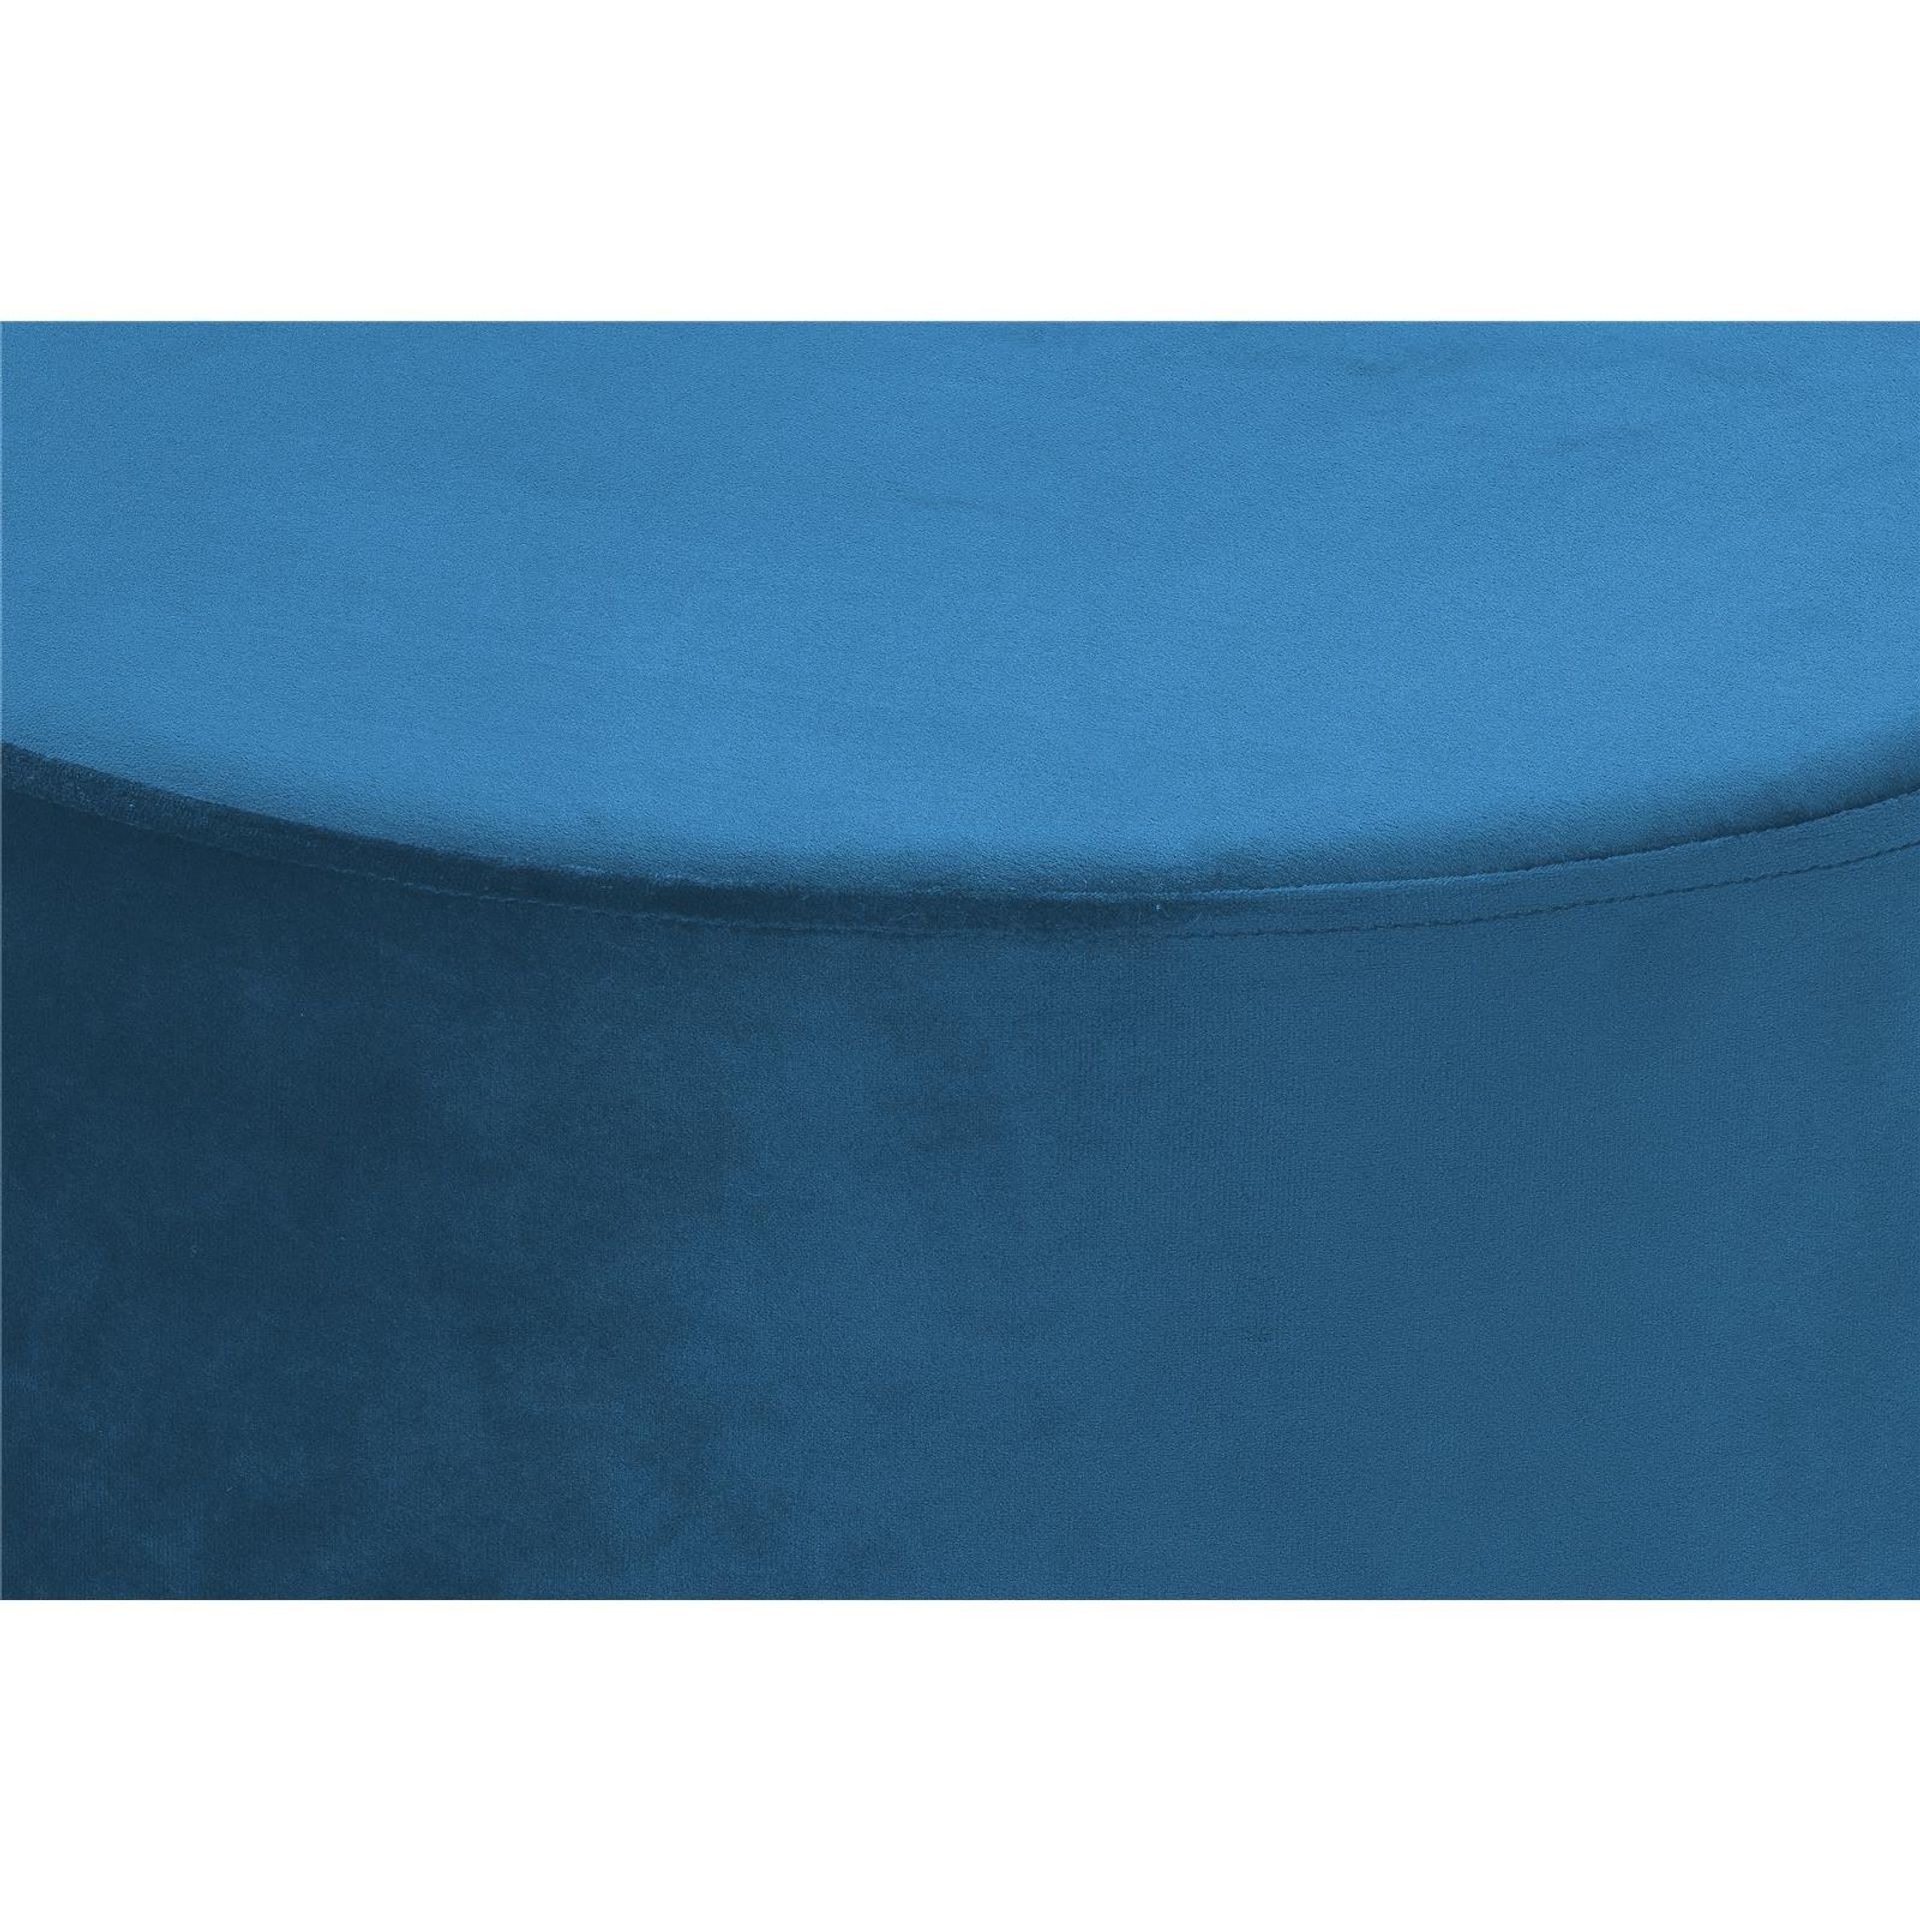 Hocker Nano 310 Blau - 55 cm (L) x 55 cm (B) x 35 cm (H)